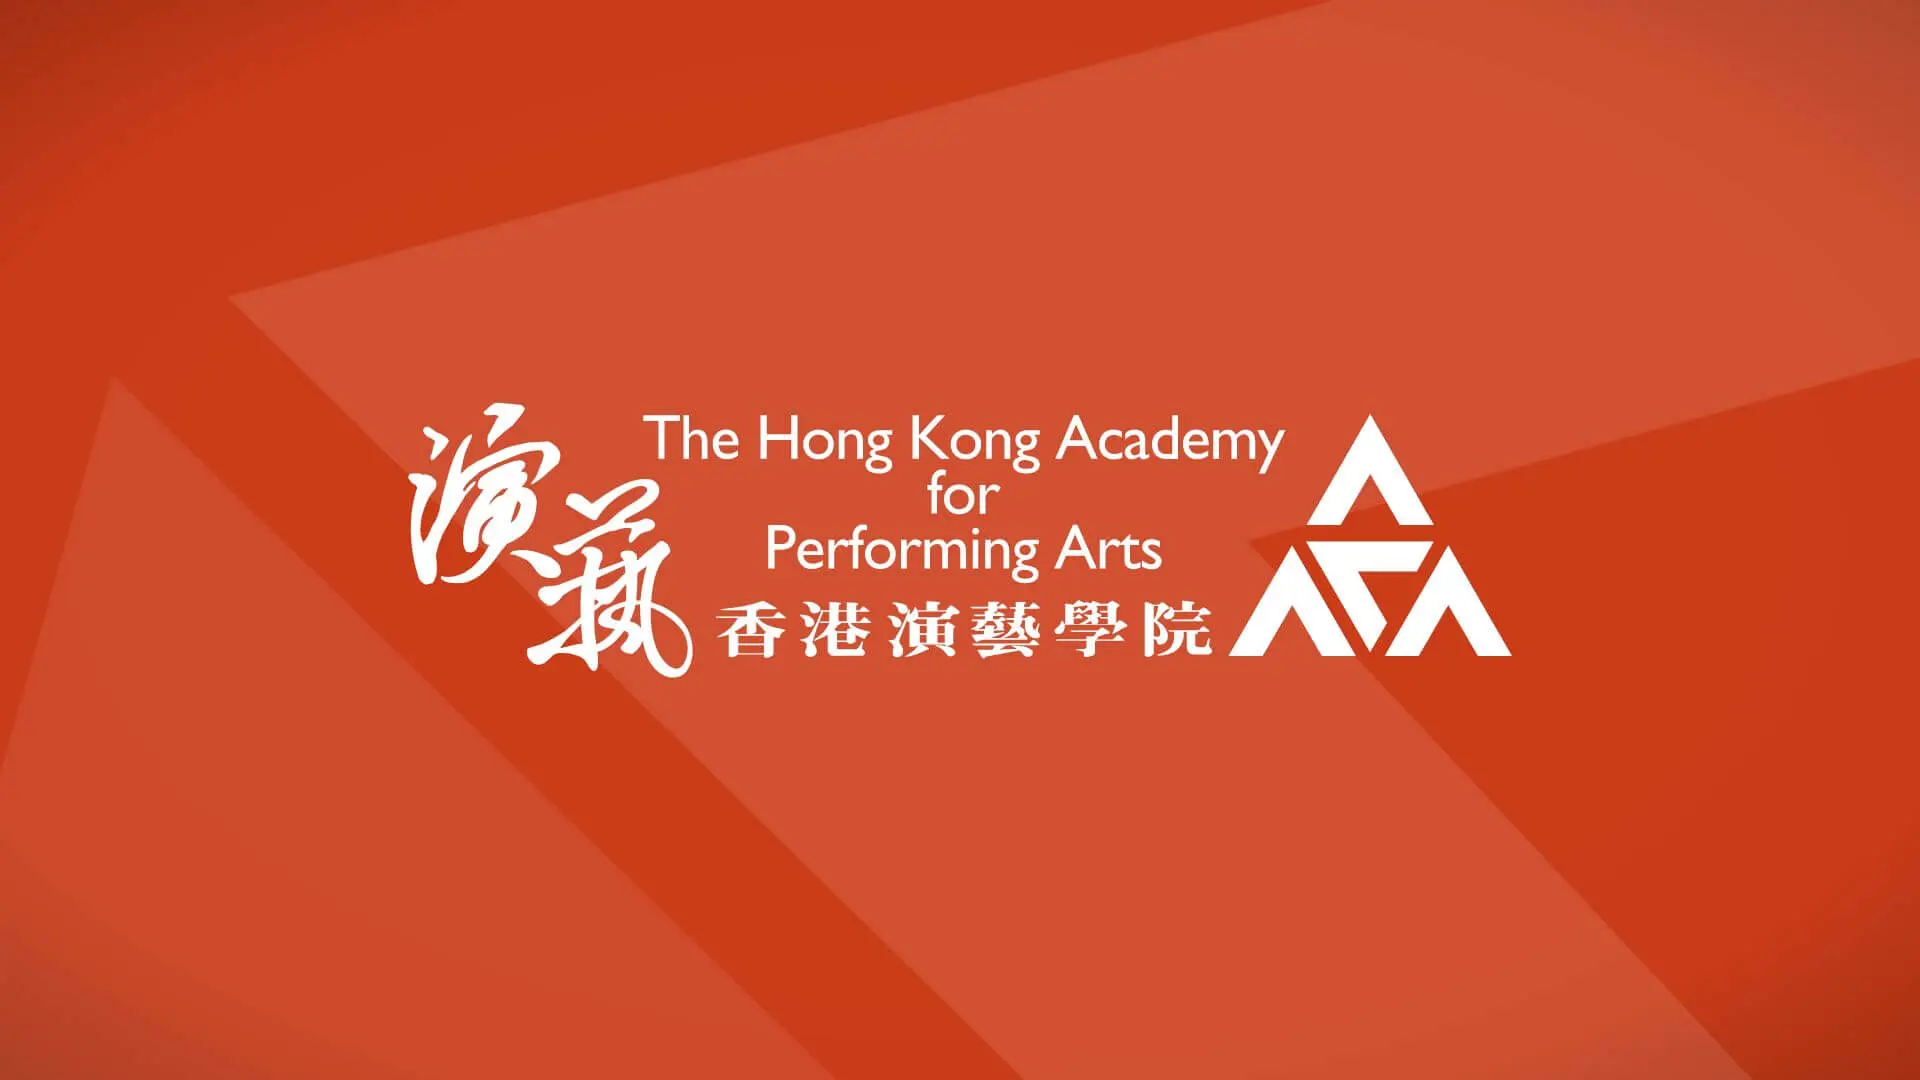 (Cancelled) Academy Postgraduate Music Lecture-Recital - Lai Peilin (Collaborative Piano)